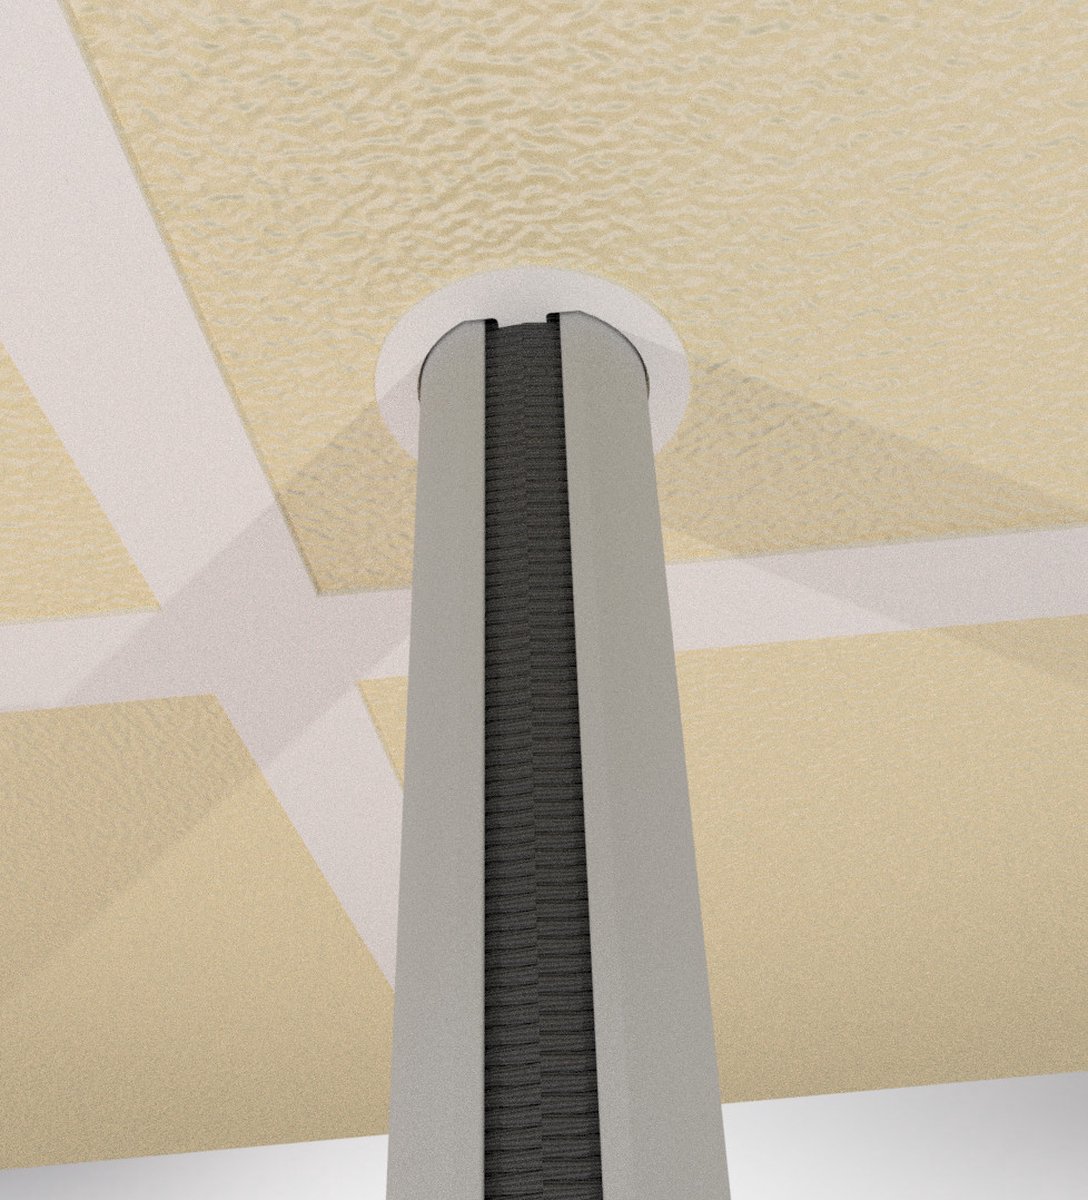 Qbryte Buiszuil V2 - 300 cm - wit - aluminium kabelzuil - optie voor VESA mount en contactdozen - rond - incl voet en topsteun